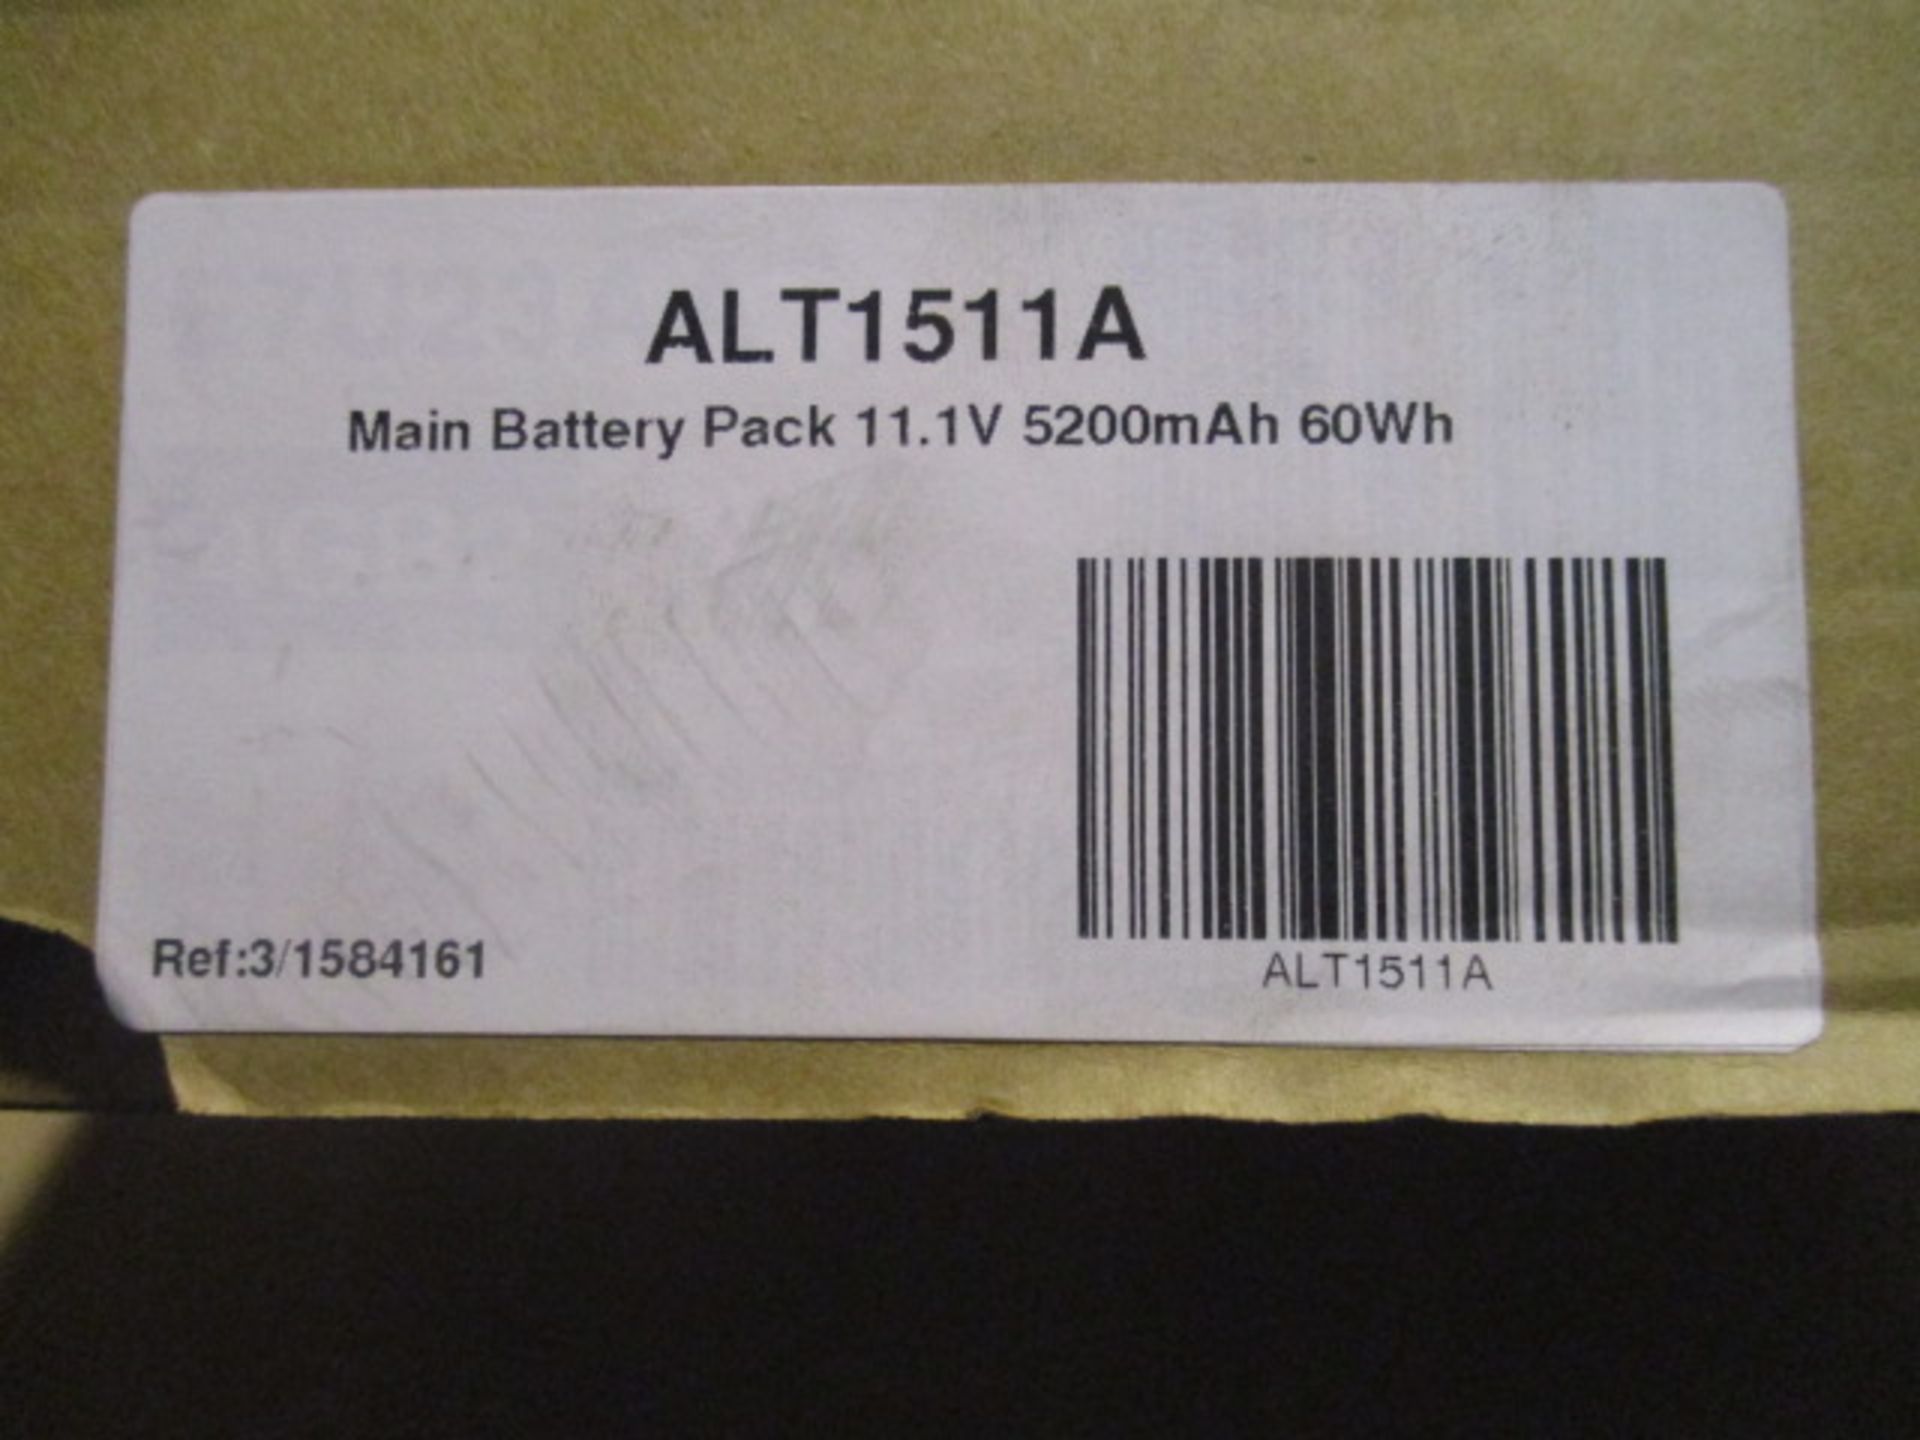 Looks like unused ALT 1511A battery pack - Image 2 of 2